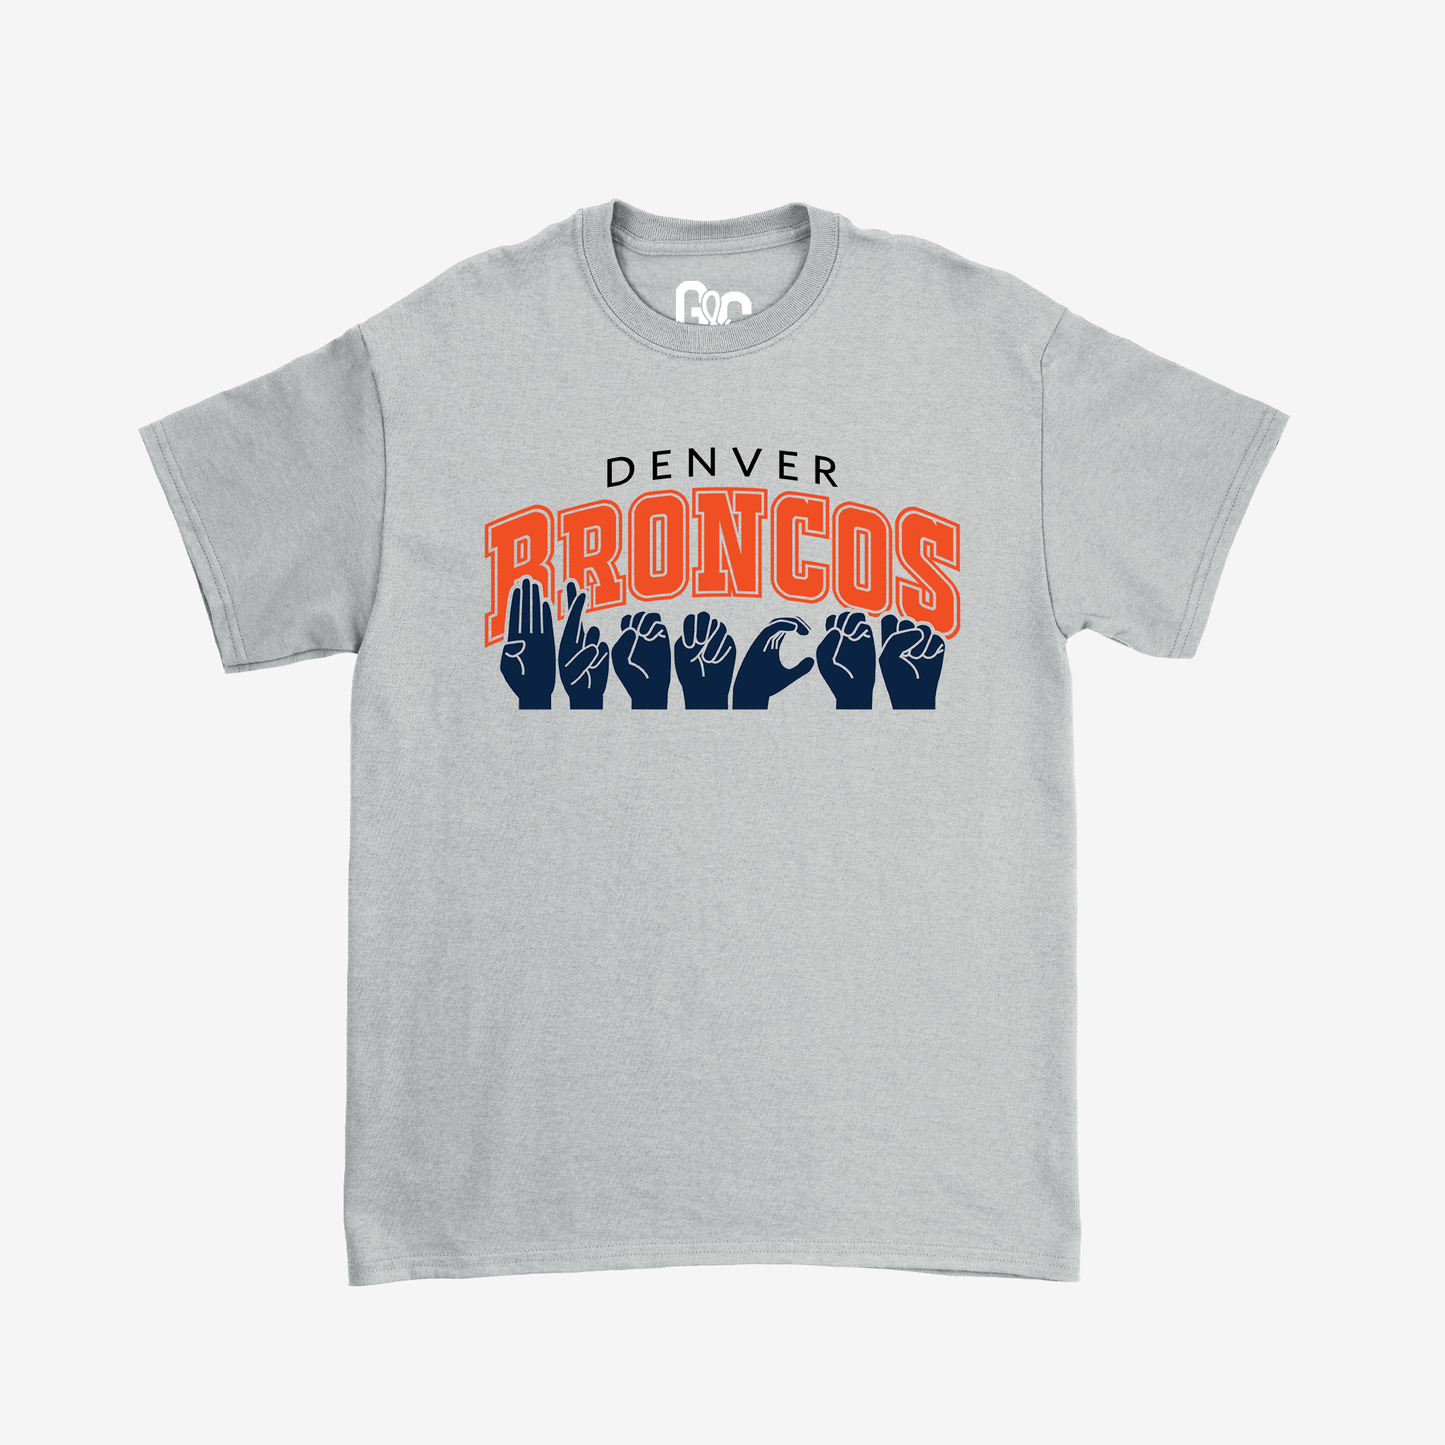 Denver Broncos Tee